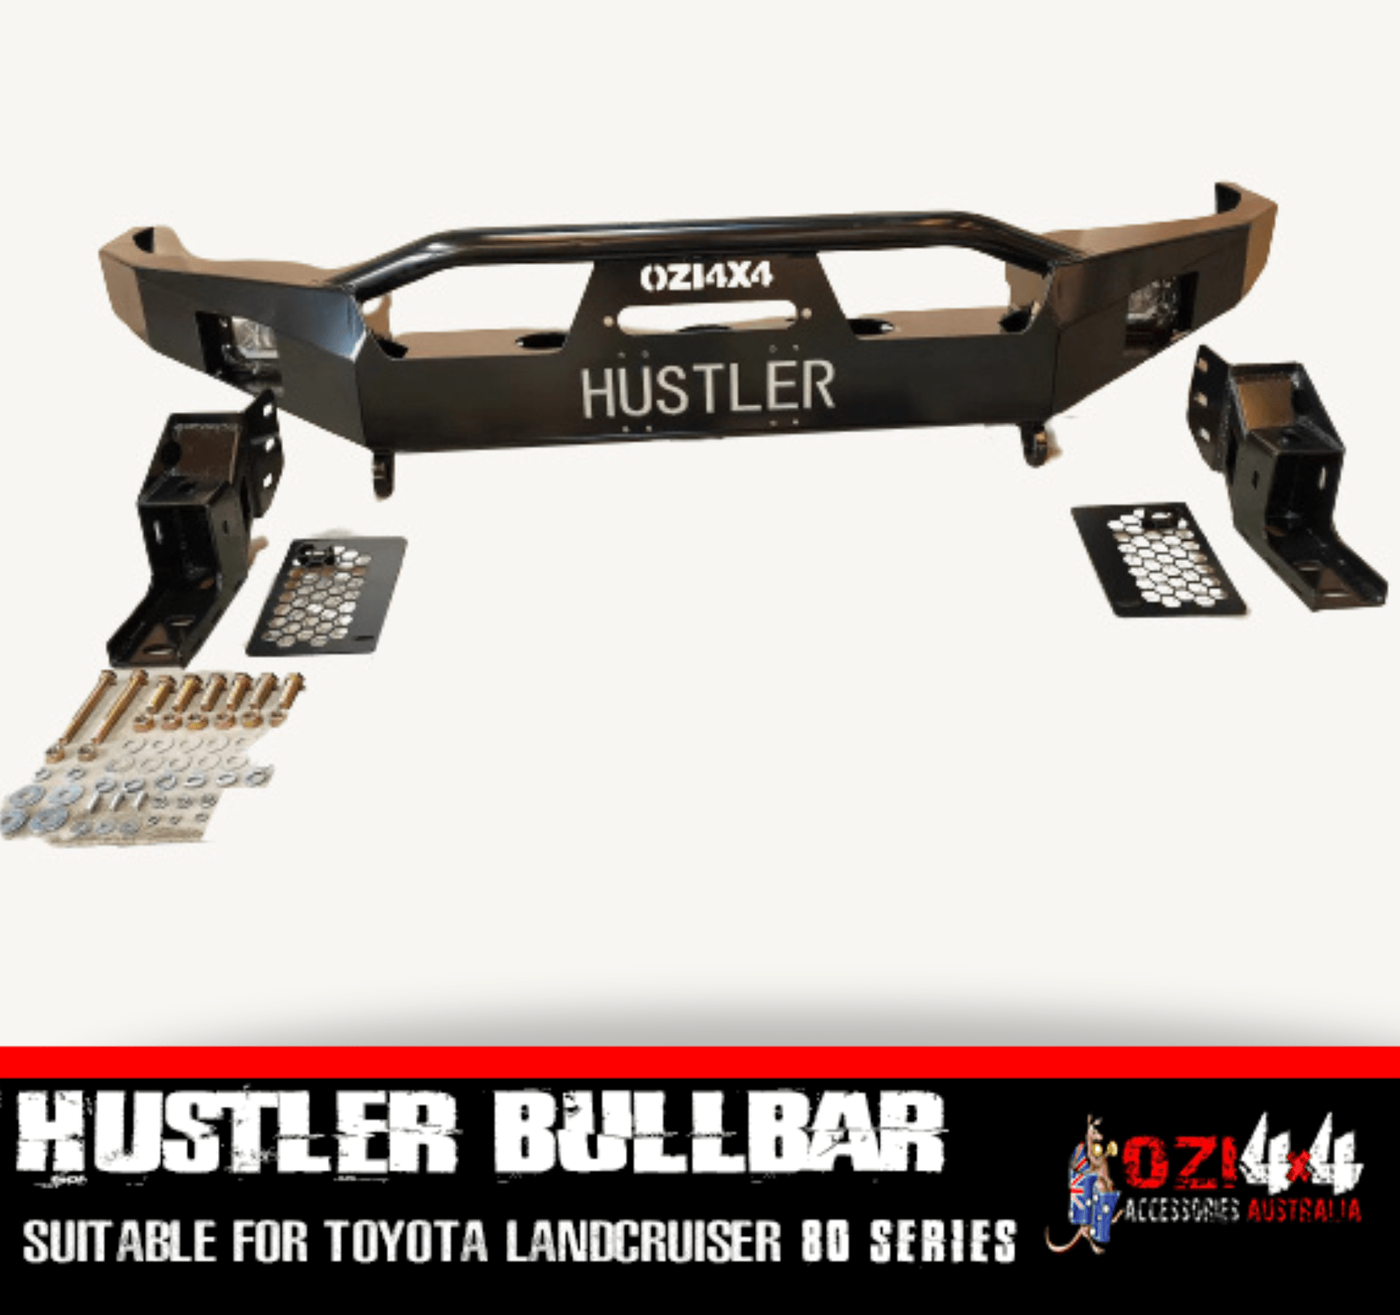 Hustler Bullbar GEN 2 Suitable For Toyota Land Cruiser 80 Series (Pre-Order) - OZI4X4 PTY LTD